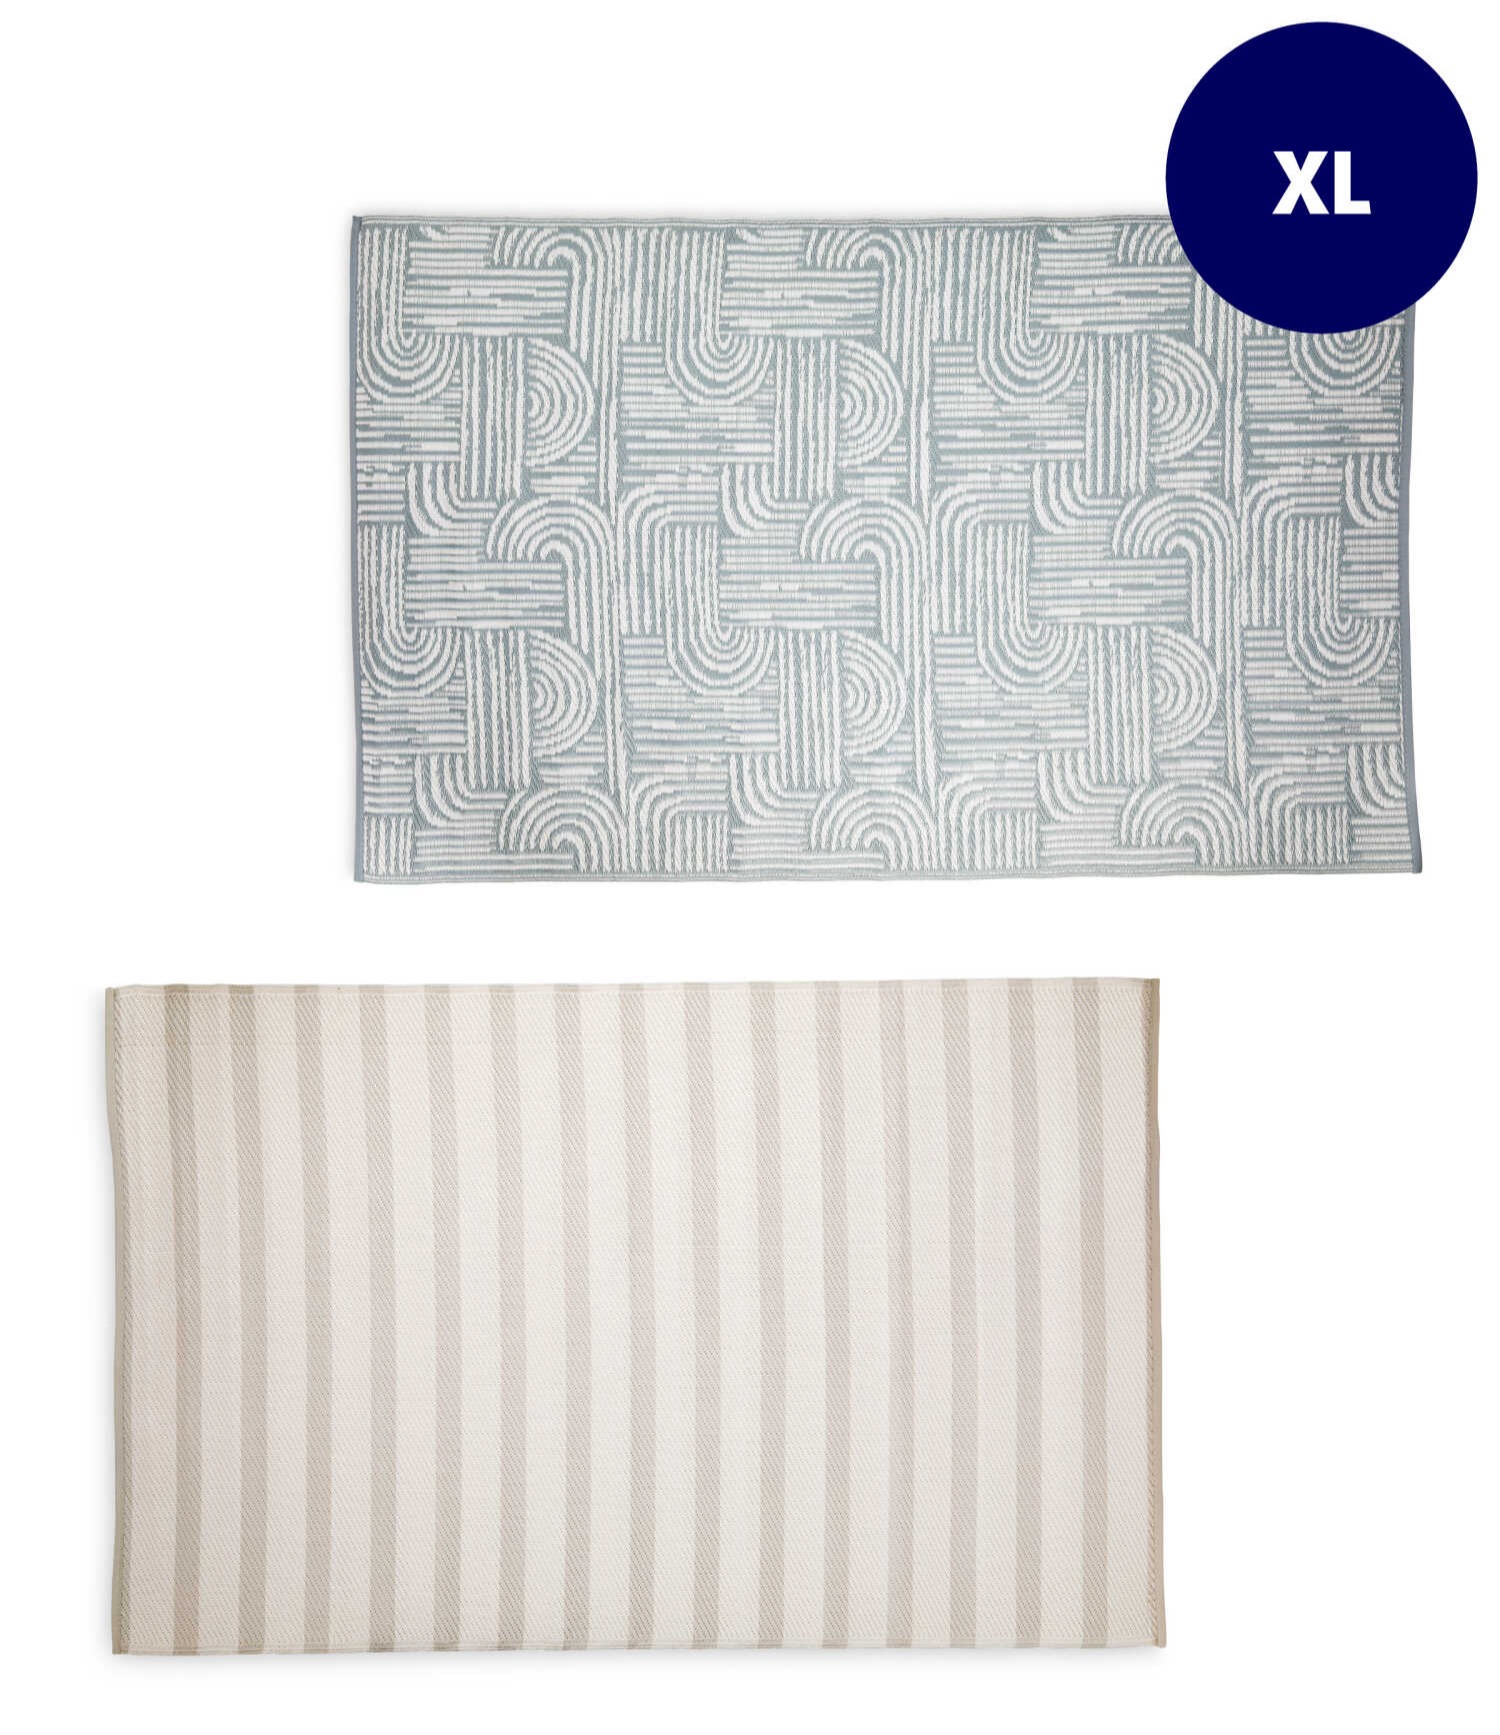 Diese XL-Teppiche gibt es in zwei Designs und sind die perfekte Möglichkeit, Ihren Außenbereich kostengünstig aufzupeppen